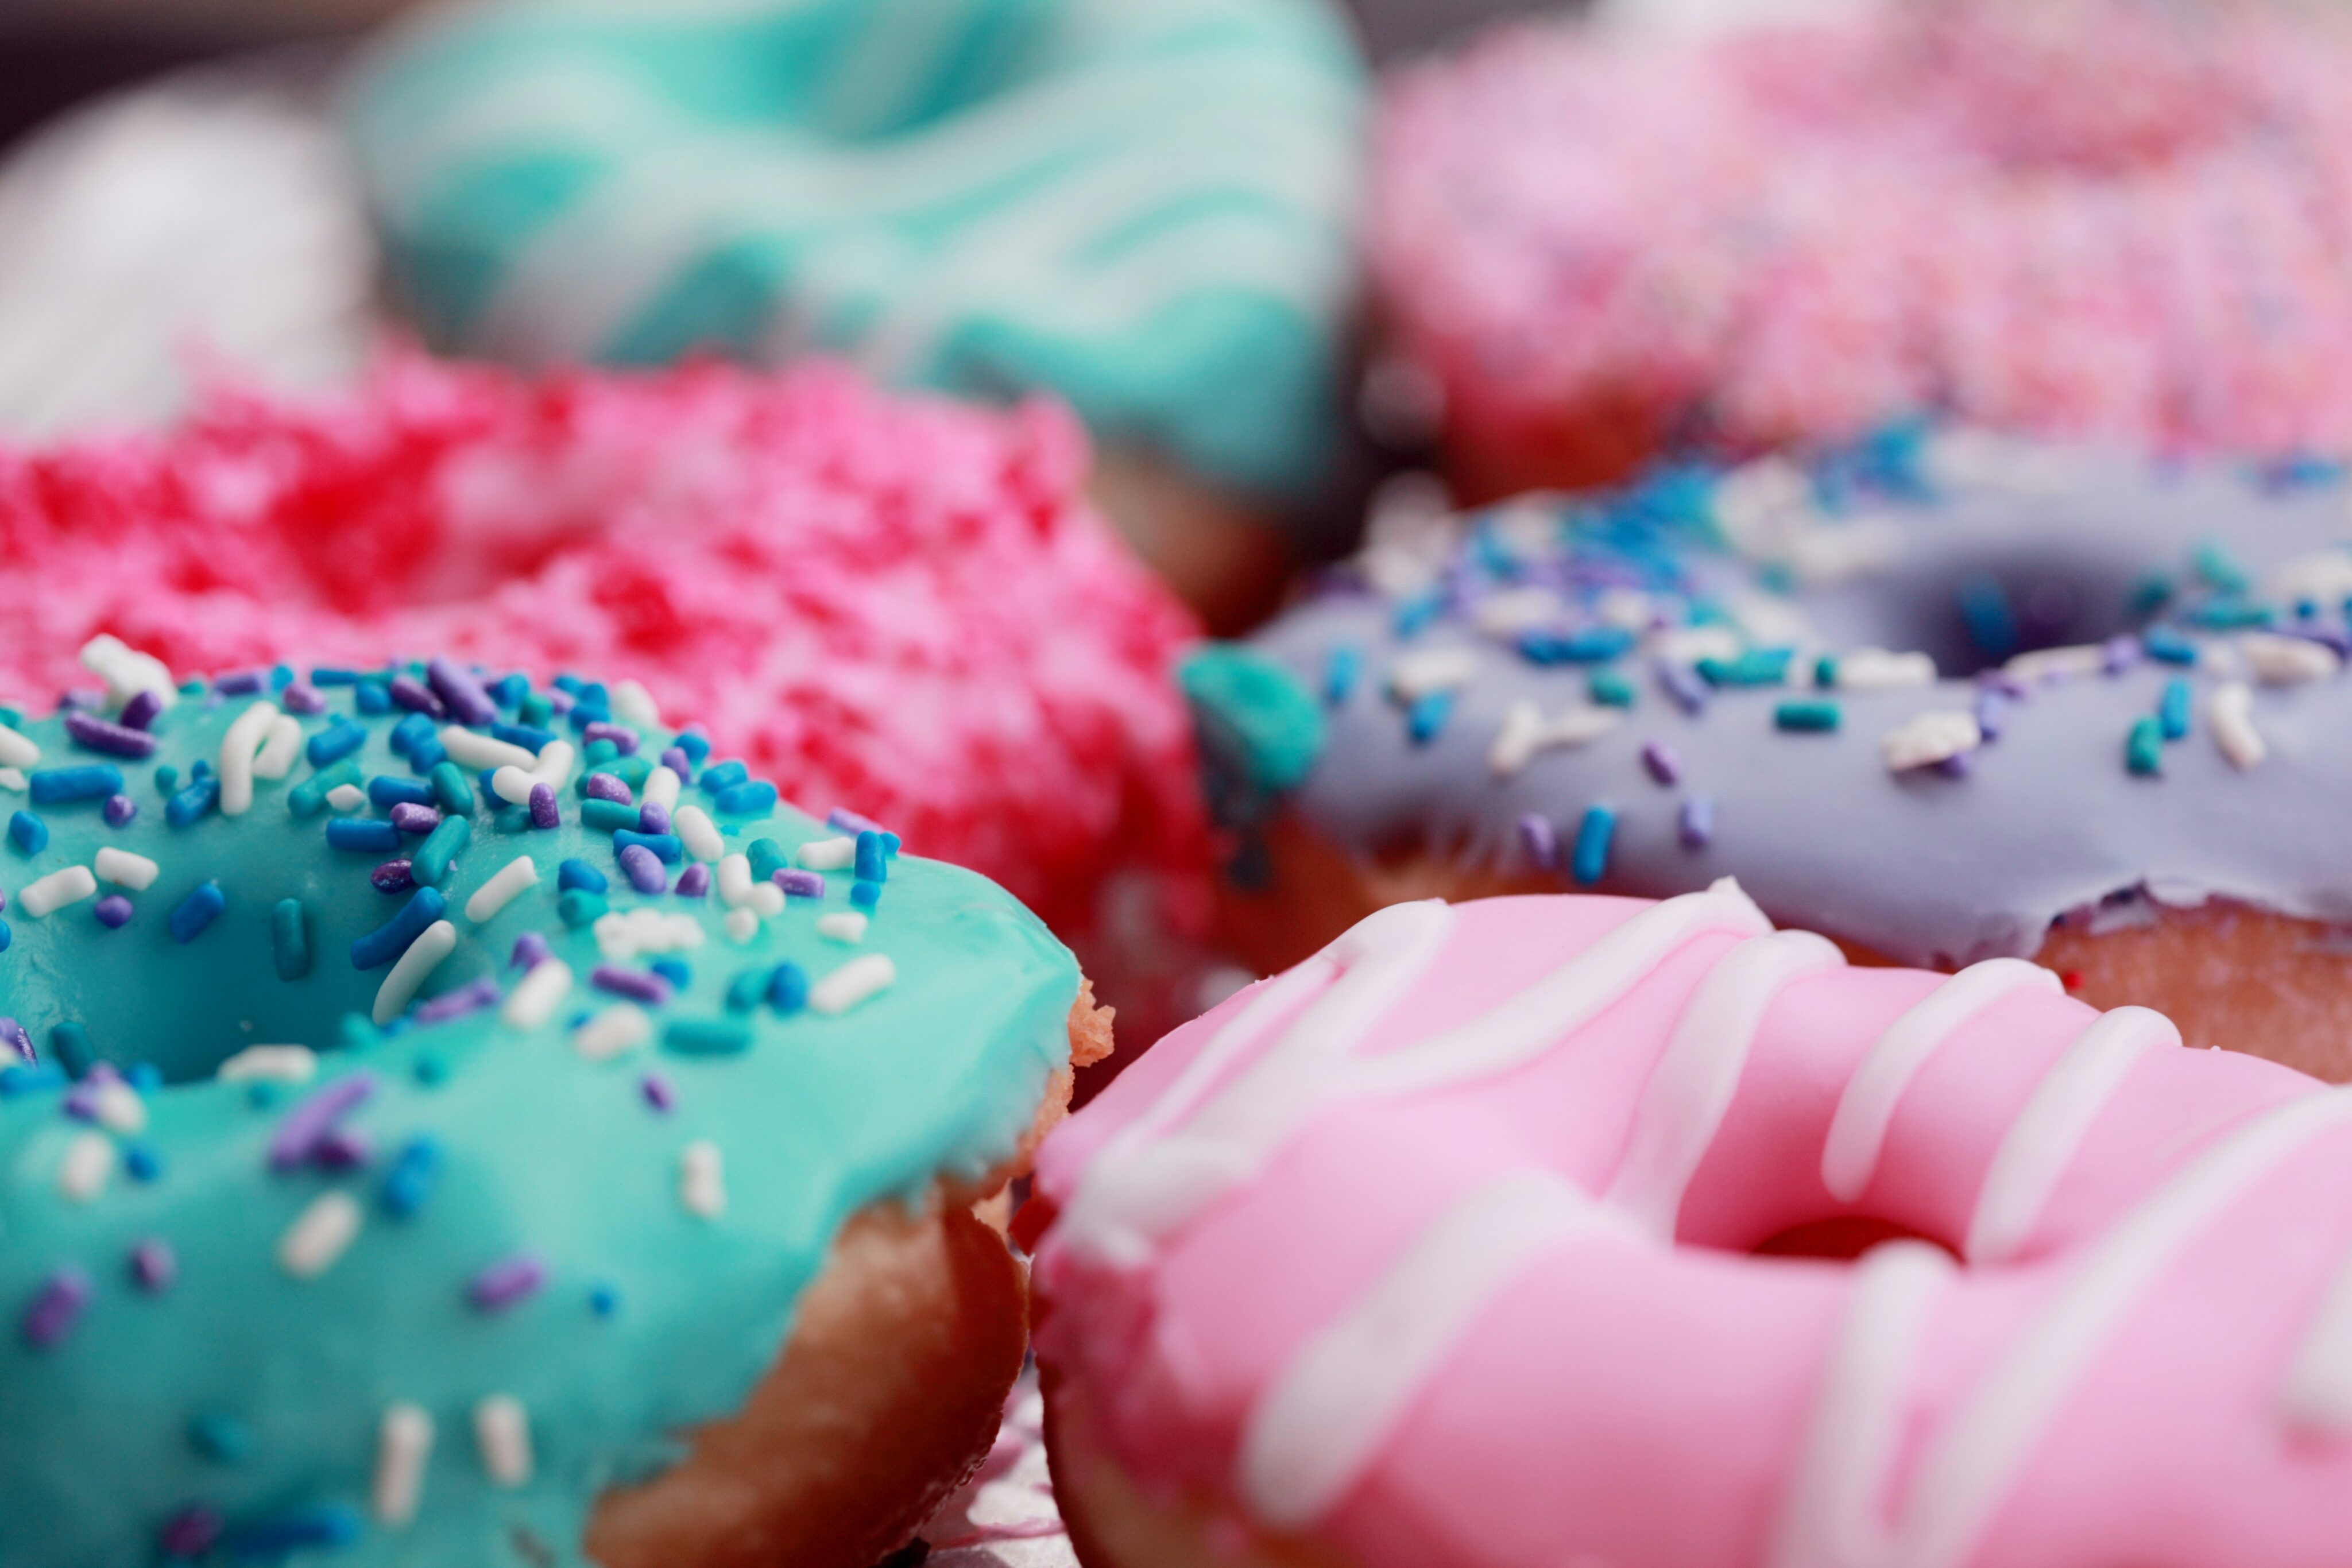 Diabetes mellitus Typ 2: Nahaufnahme von farbenfrohen Donuts mit Zuckerguss und Streuseln, ein verlockendes Bild, das jedoch die potenzielle Gefahr von zucker- und fettreichen Snacks für Menschen mit Diabetes mellitus Typ 2 symbolisiert